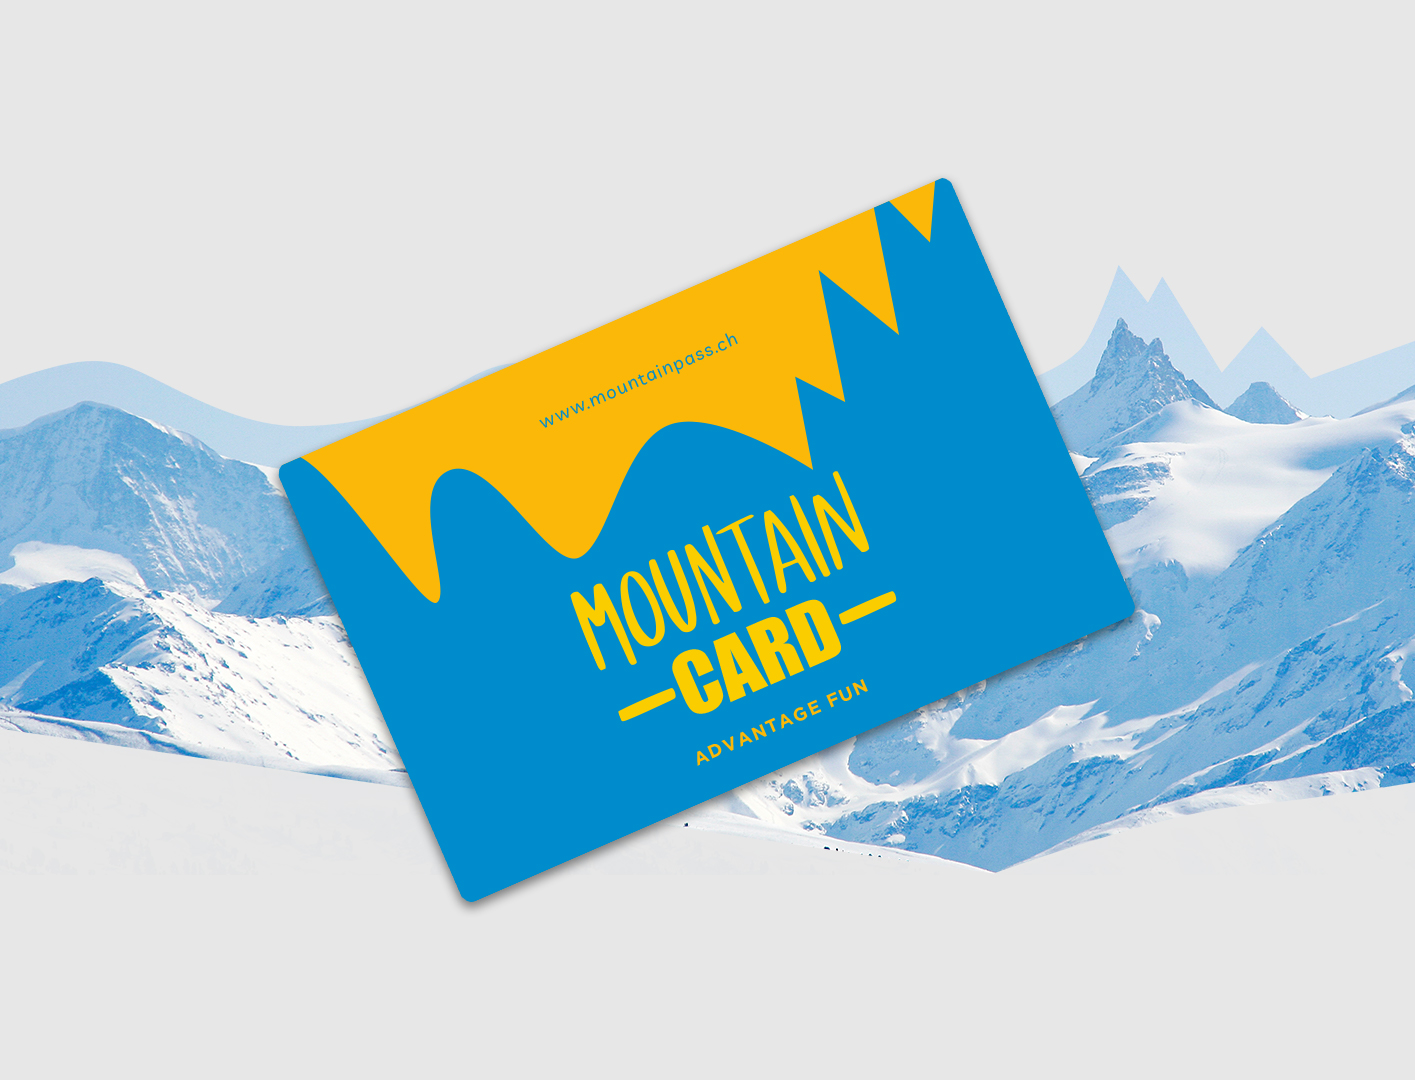 Webshop Mountain Card